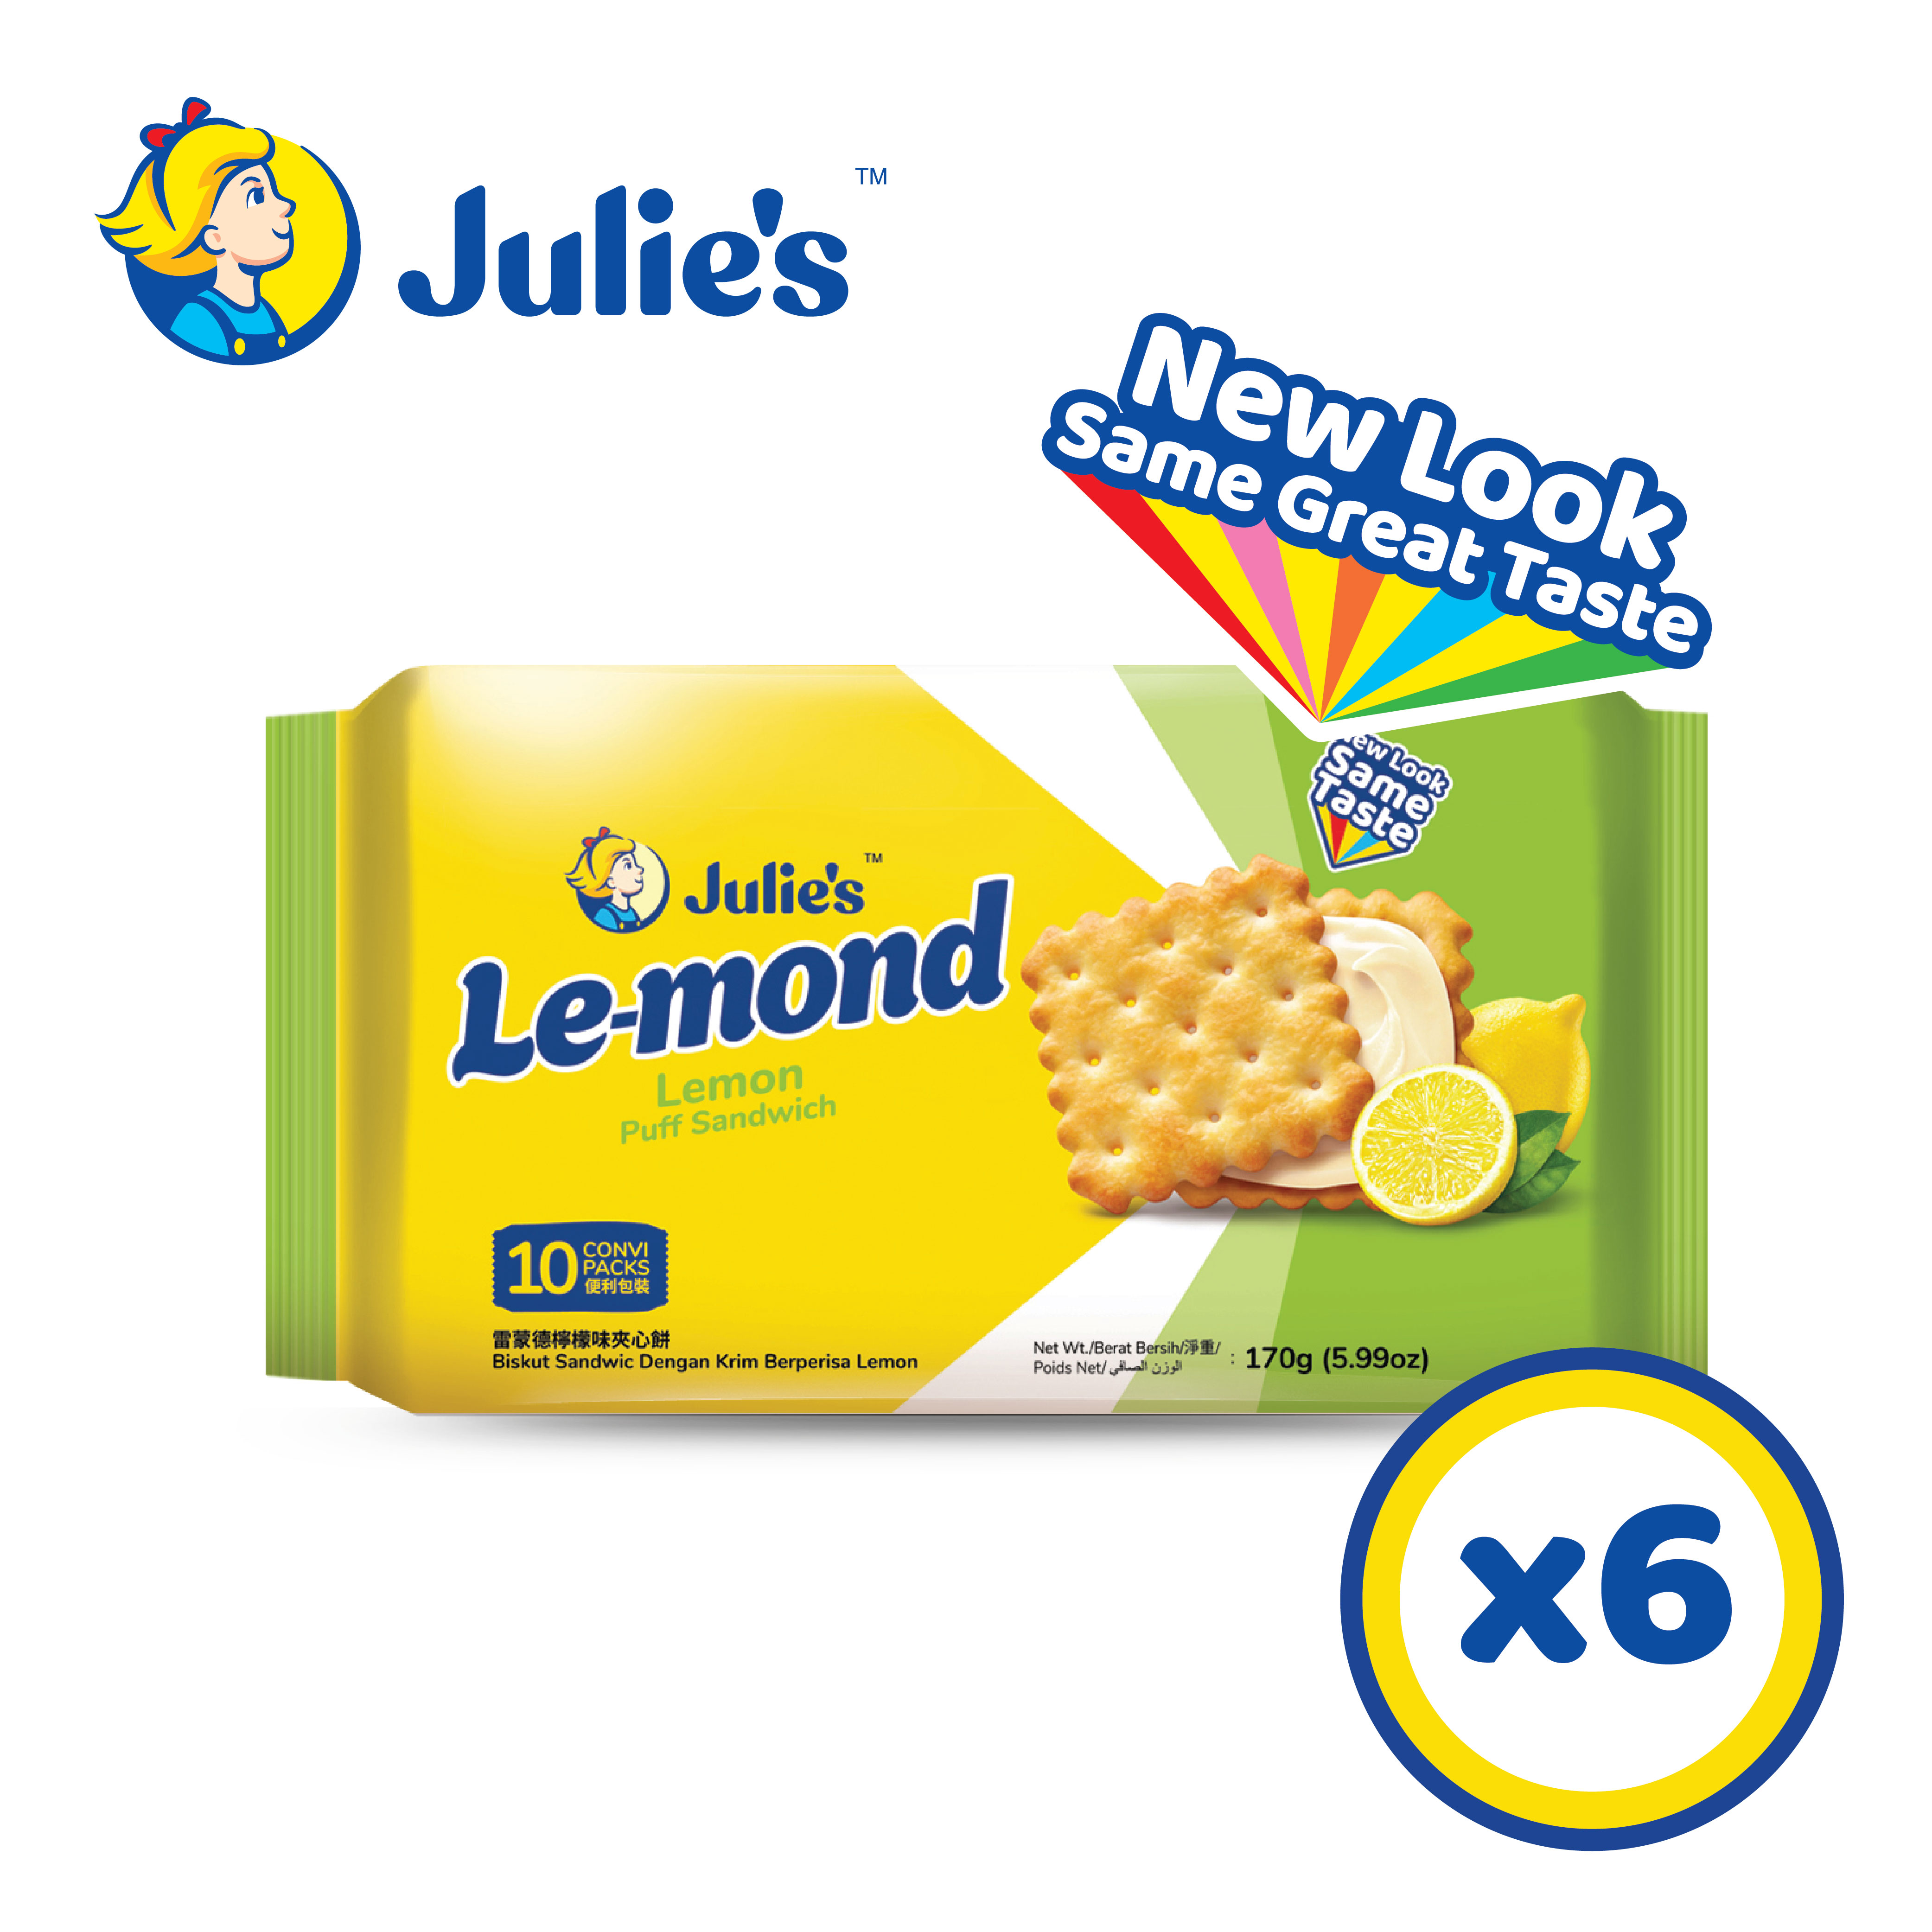 Julie’s Le-mond Lemon Sandwich Biscuit 170g x 6 pck